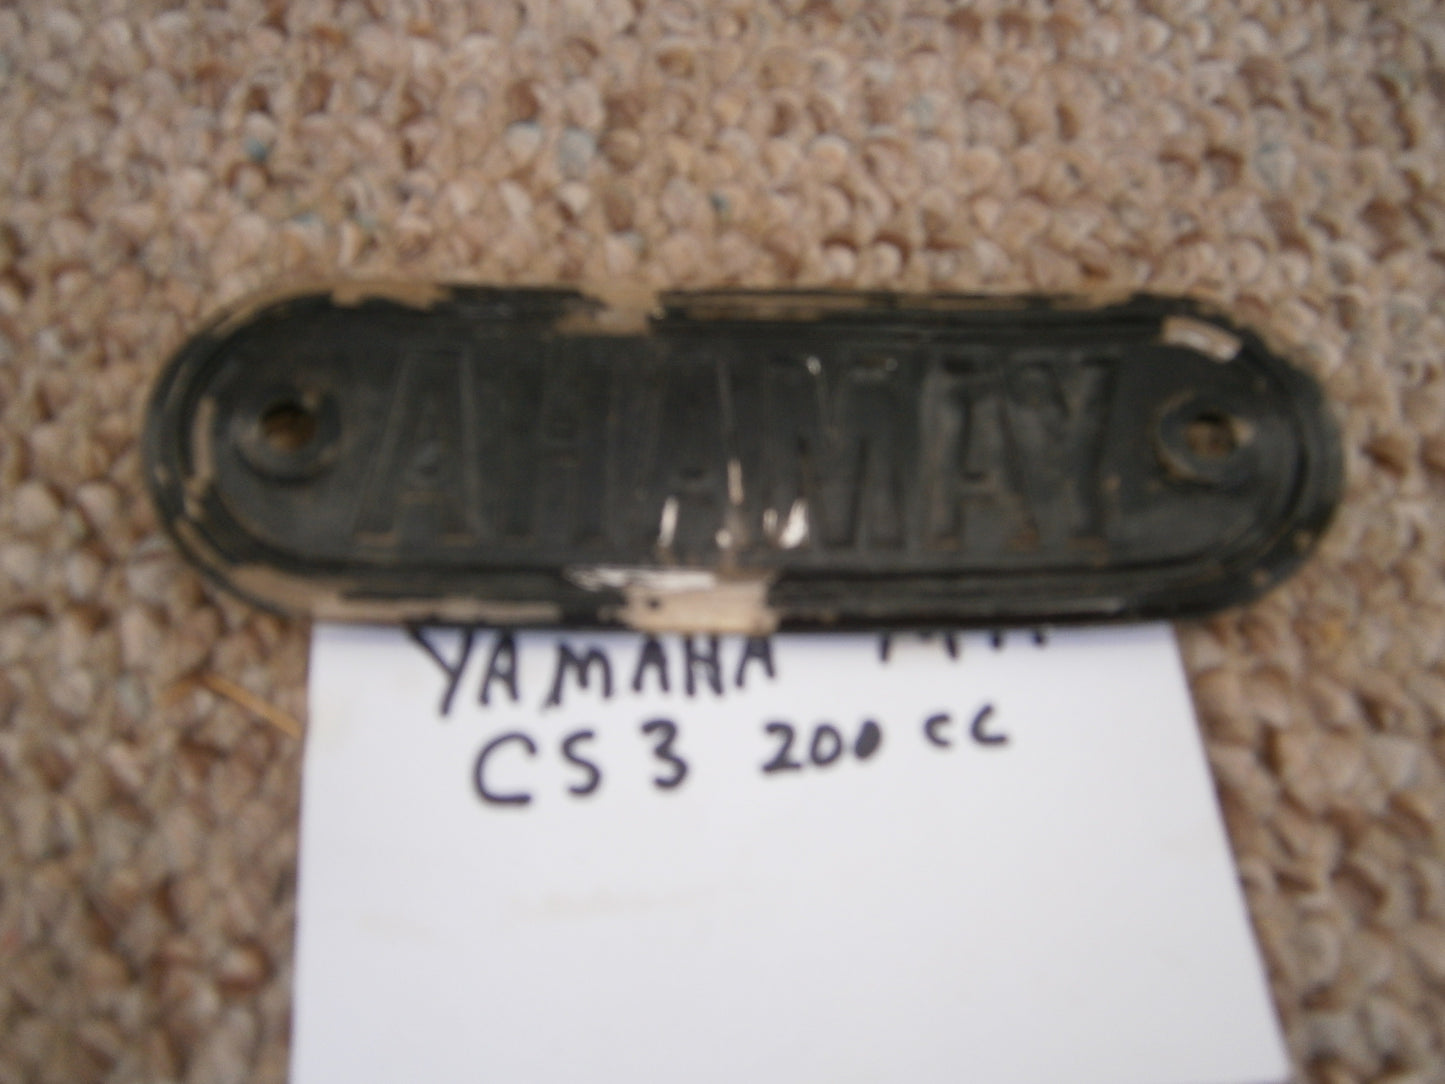 YAMAHA CS3 200cc Original Gas Tank Badge 5147